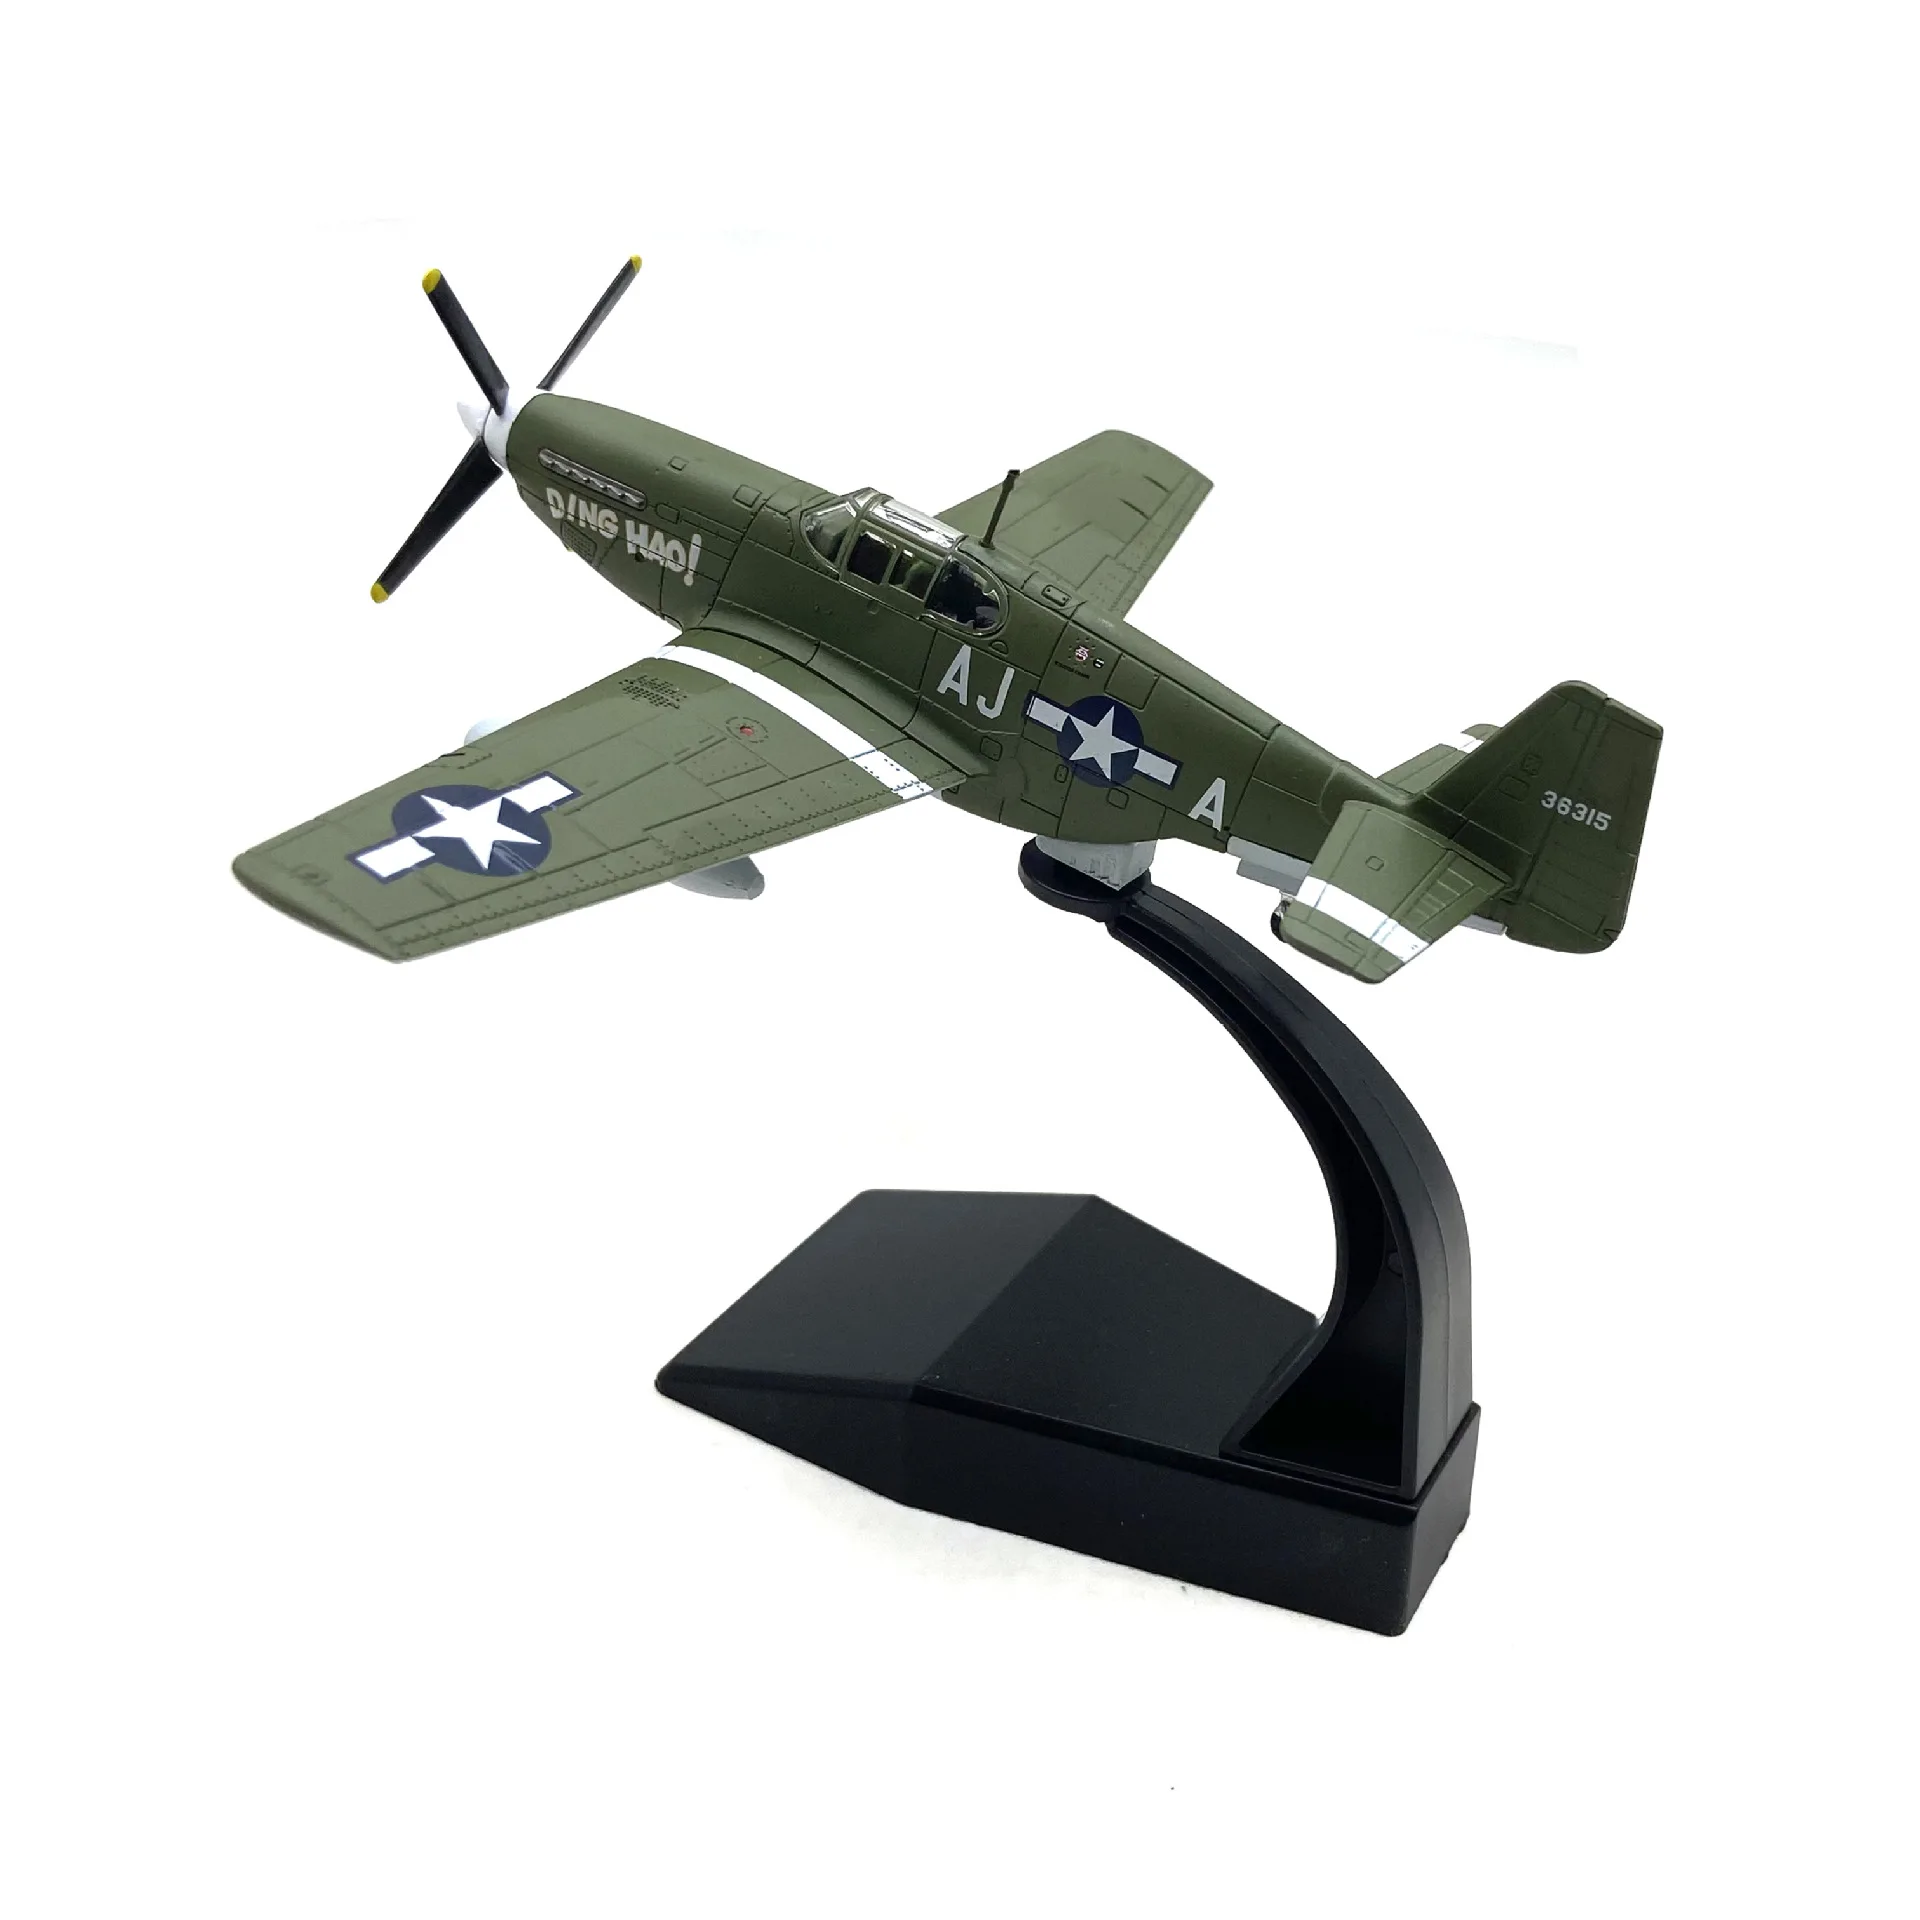 Iron Homemade folk art World War II plane models